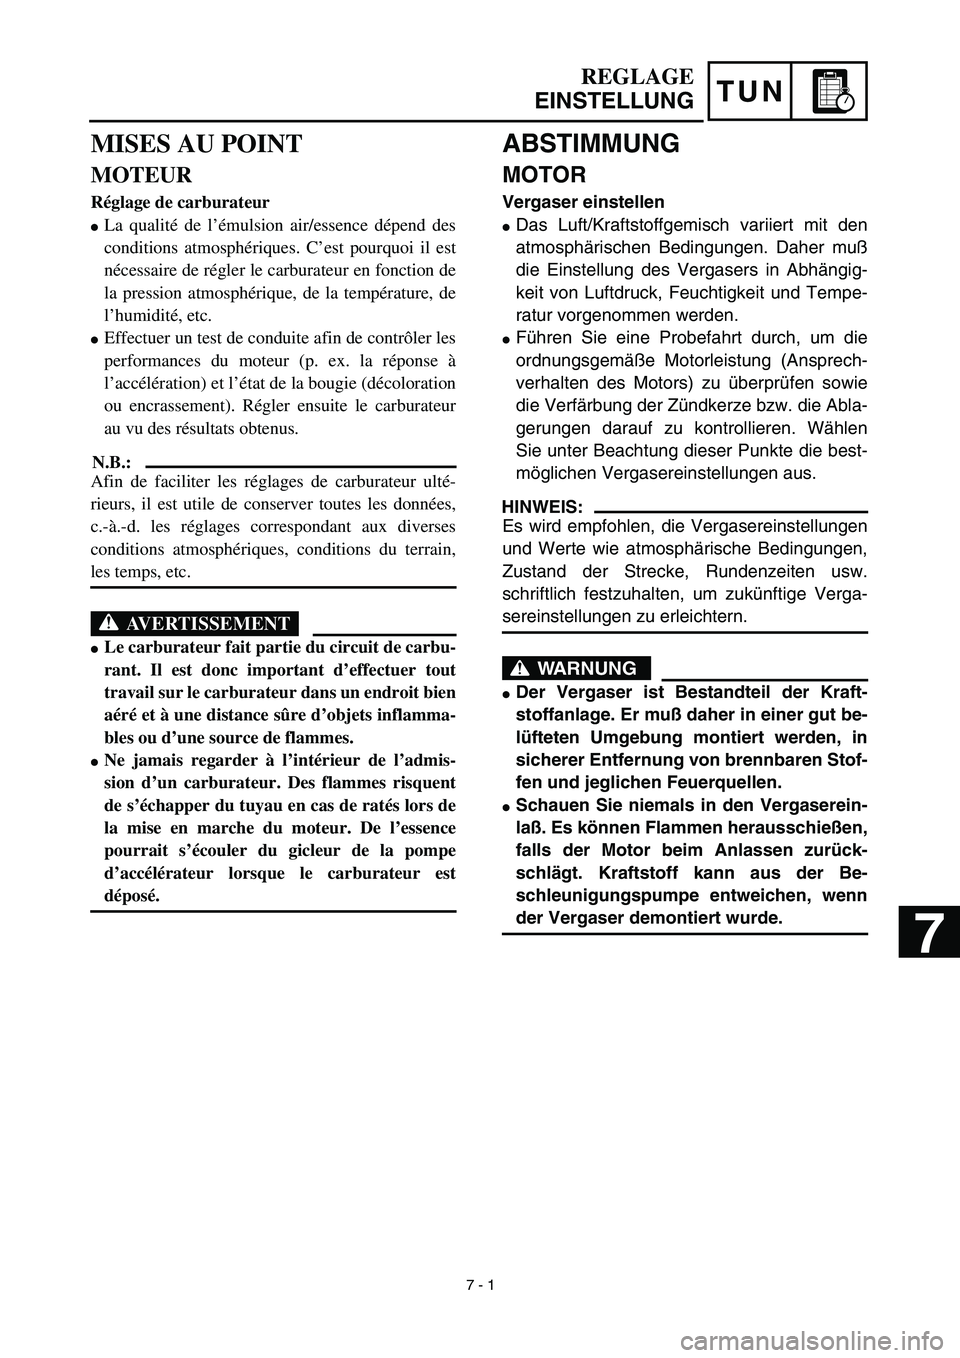 YAMAHA YZ426F 2002  Notices Demploi (in French) TUN
 
ABSTIMMUNG 
MOTOR 
Vergaser einstellen 
 
Das Luft/Kraftstoffgemisch variiert mit den
atmosphärischen Bedingungen. Daher muß
die Einstellung des Vergasers in Abhängig-
keit von Luftdruck, Fe